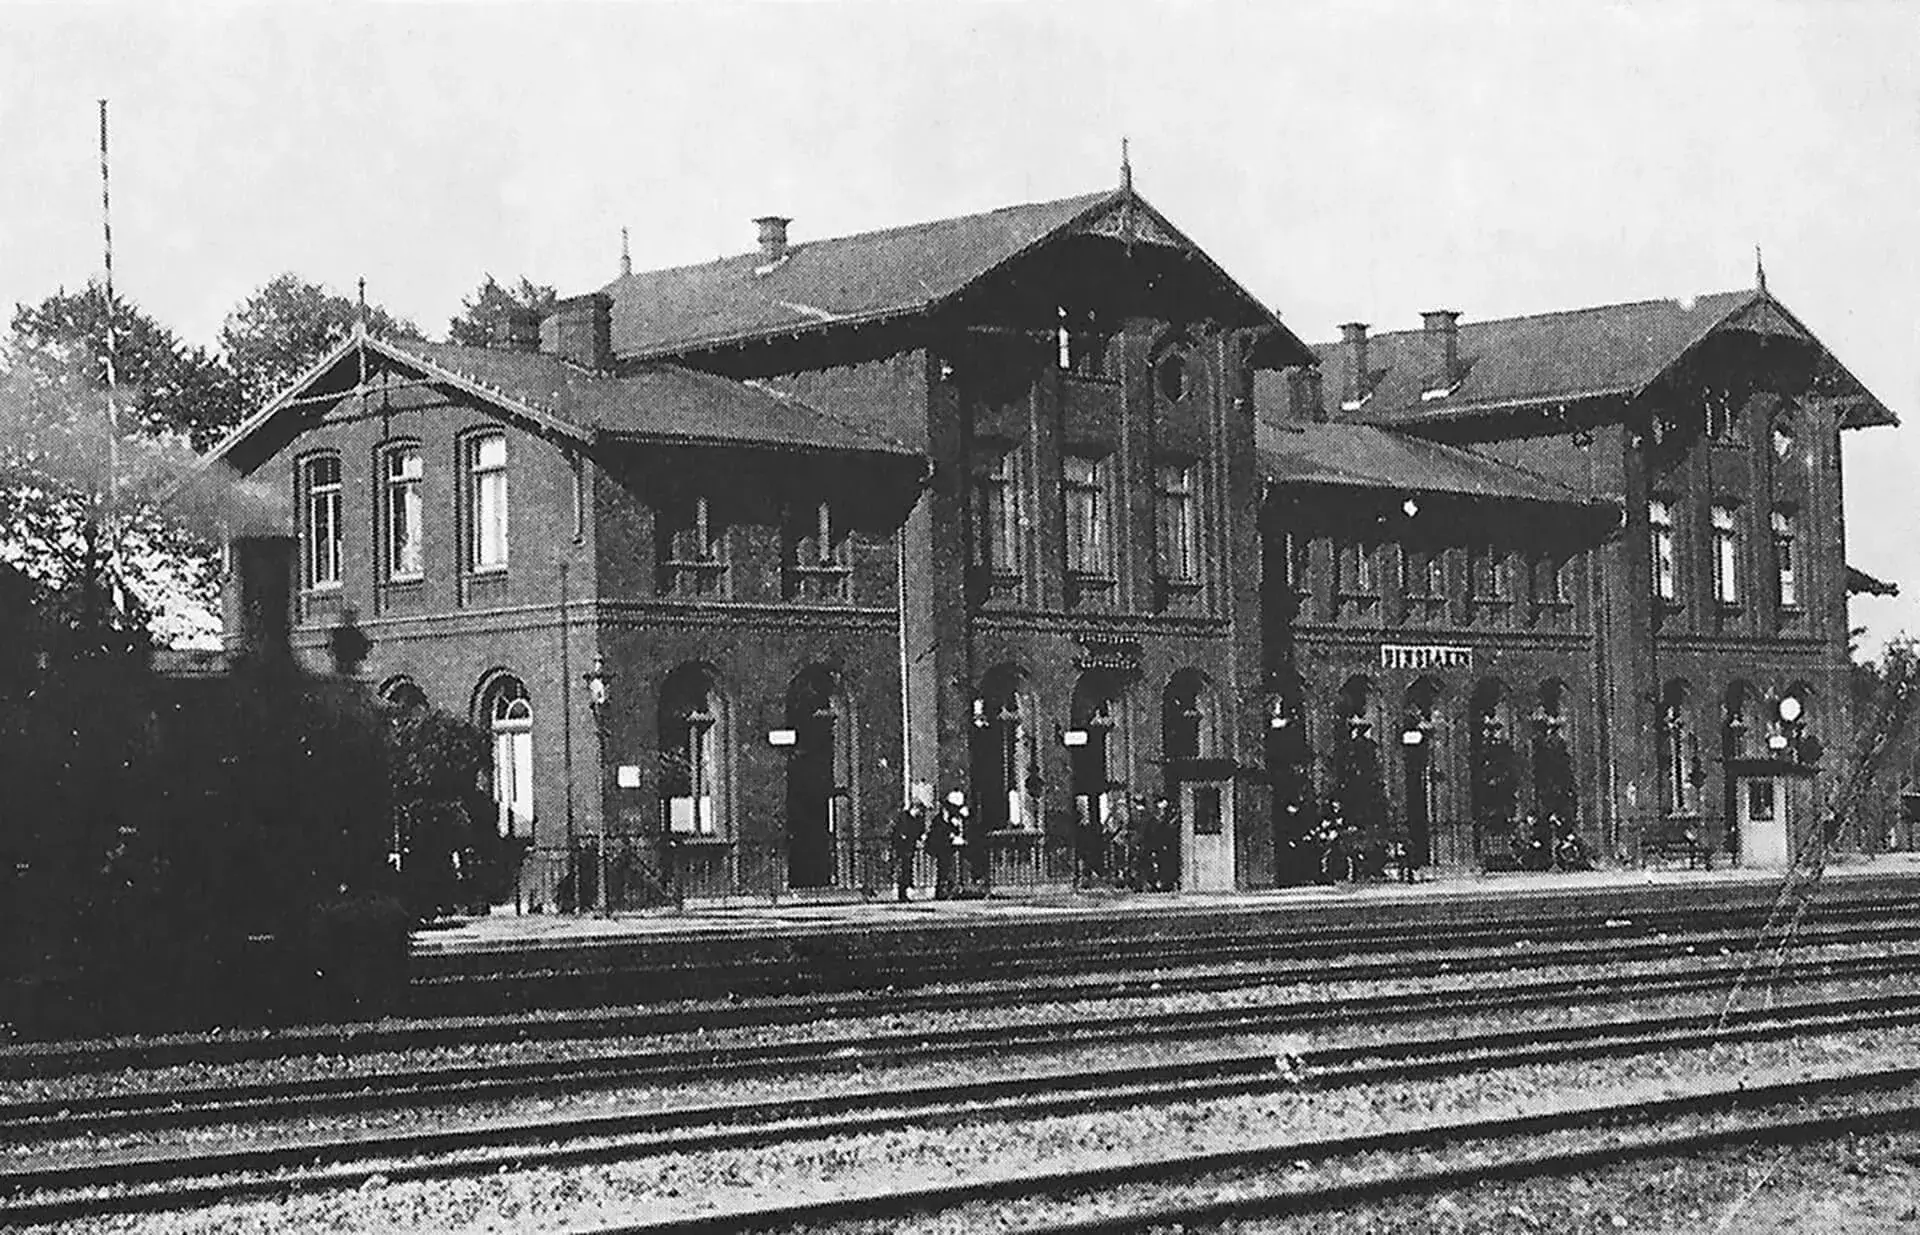 Der Bahnhof Dinslaken von der Gleisseite aus gesehen. Ab Oktober 1856 ging die Strecke von Oberhausen über Dinslaken und Emmerich nach Arnheim komplett in Betrieb. Die Postkutschenzeit war vorbei.